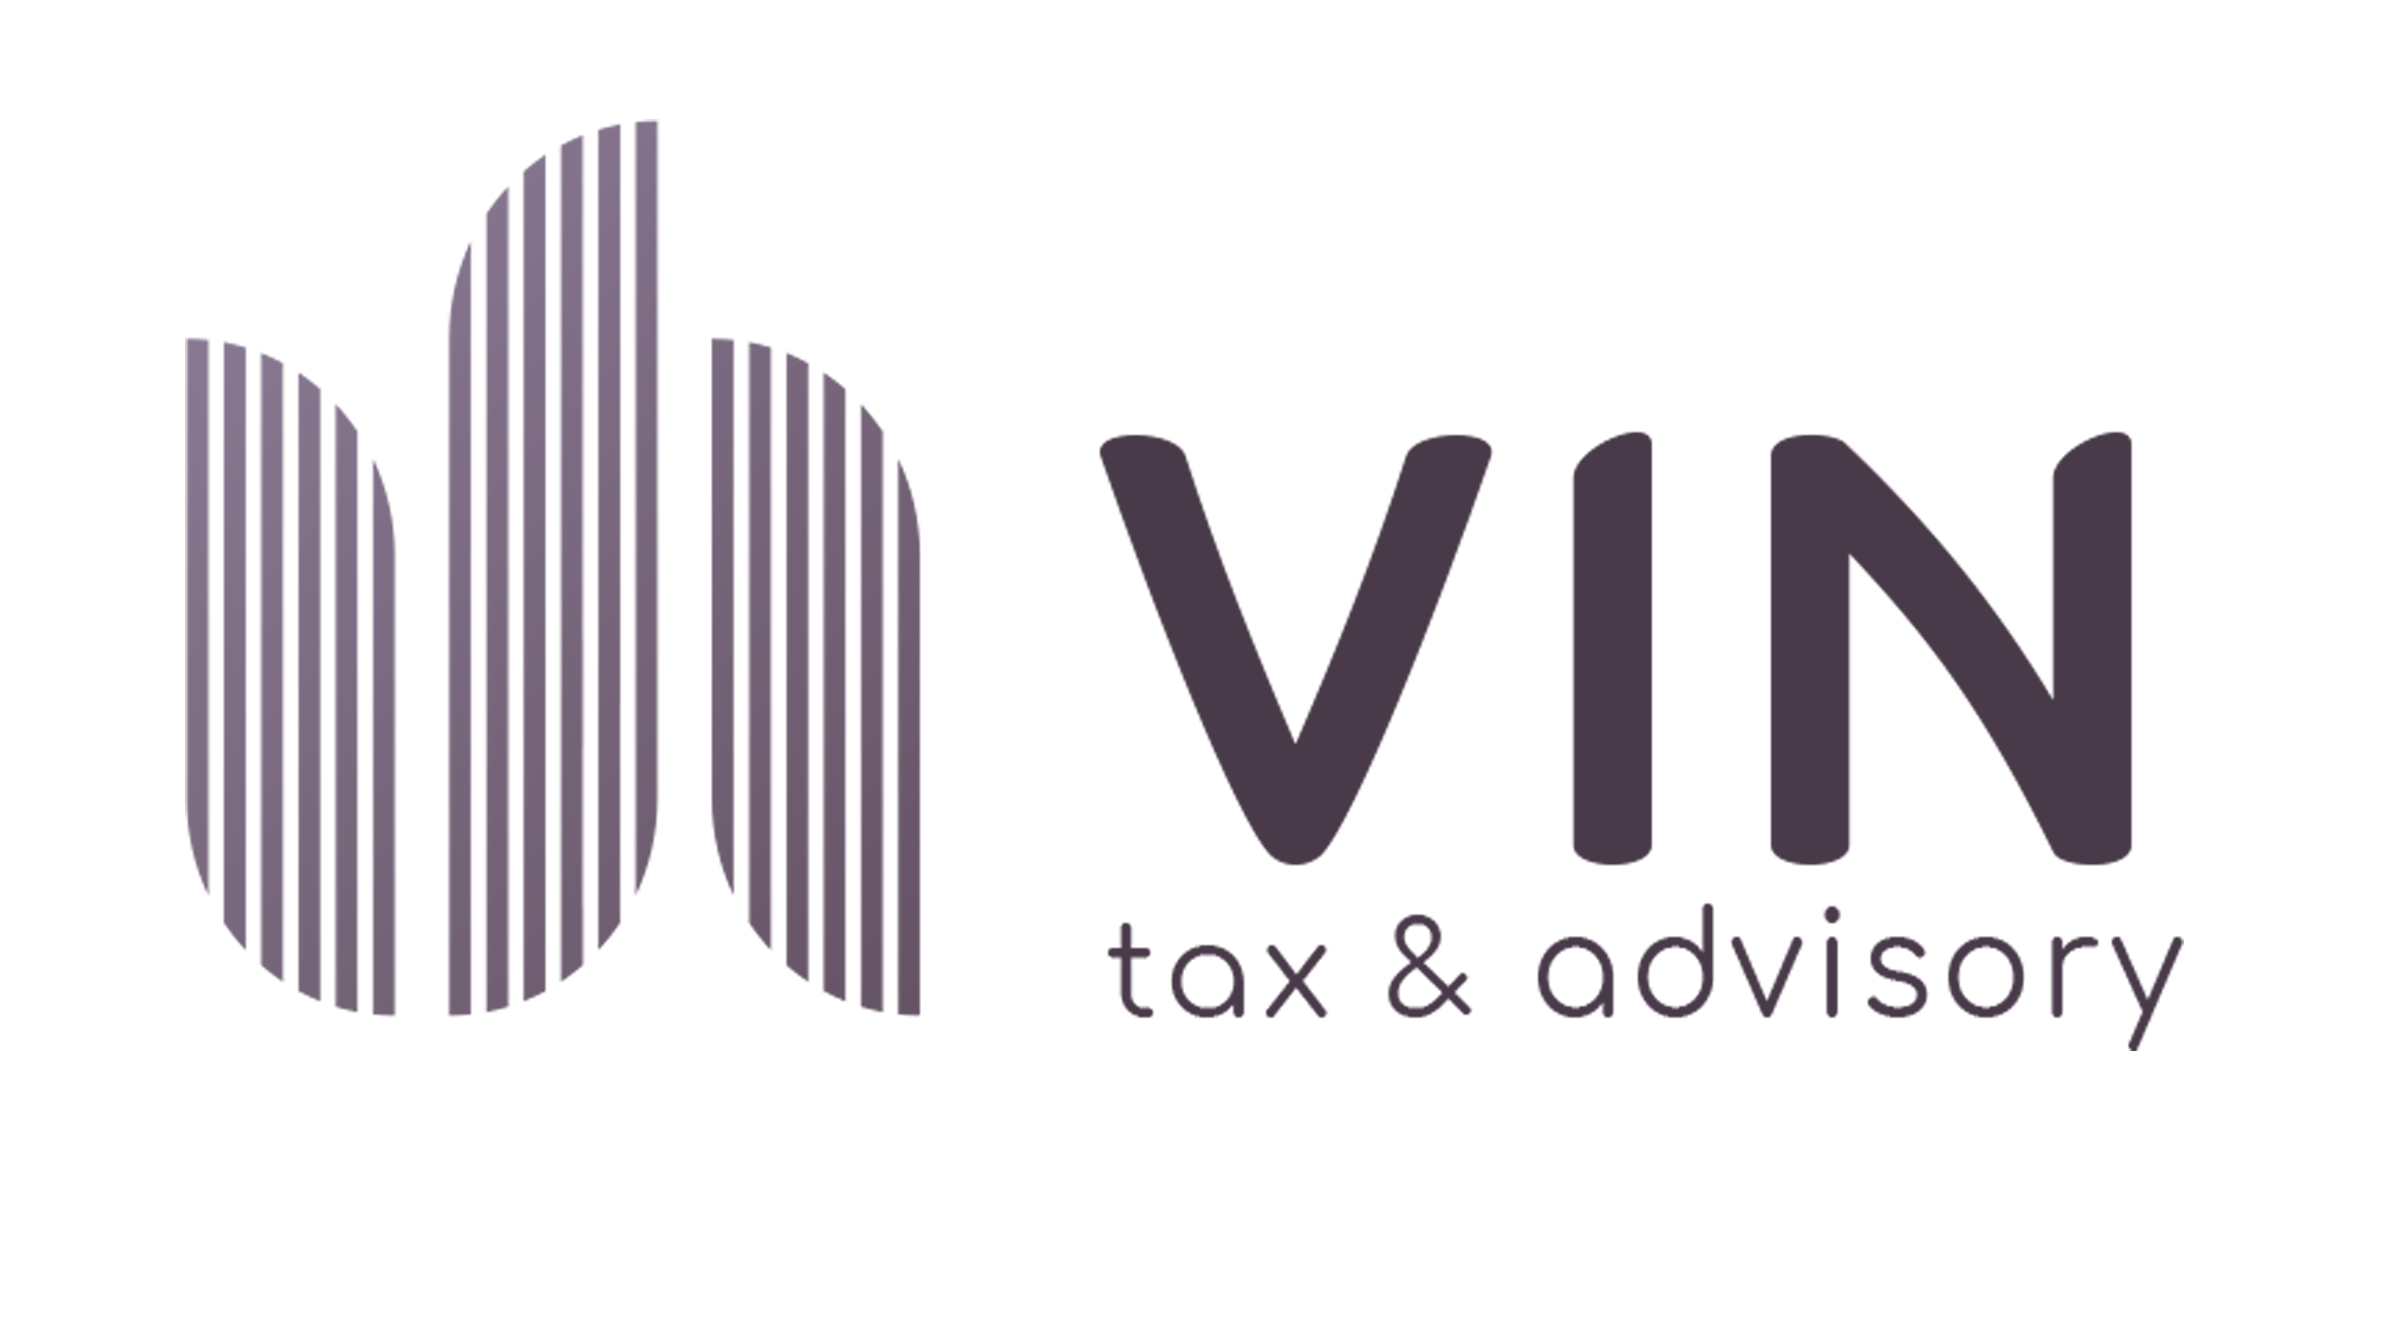 VIN Tax & Advisory